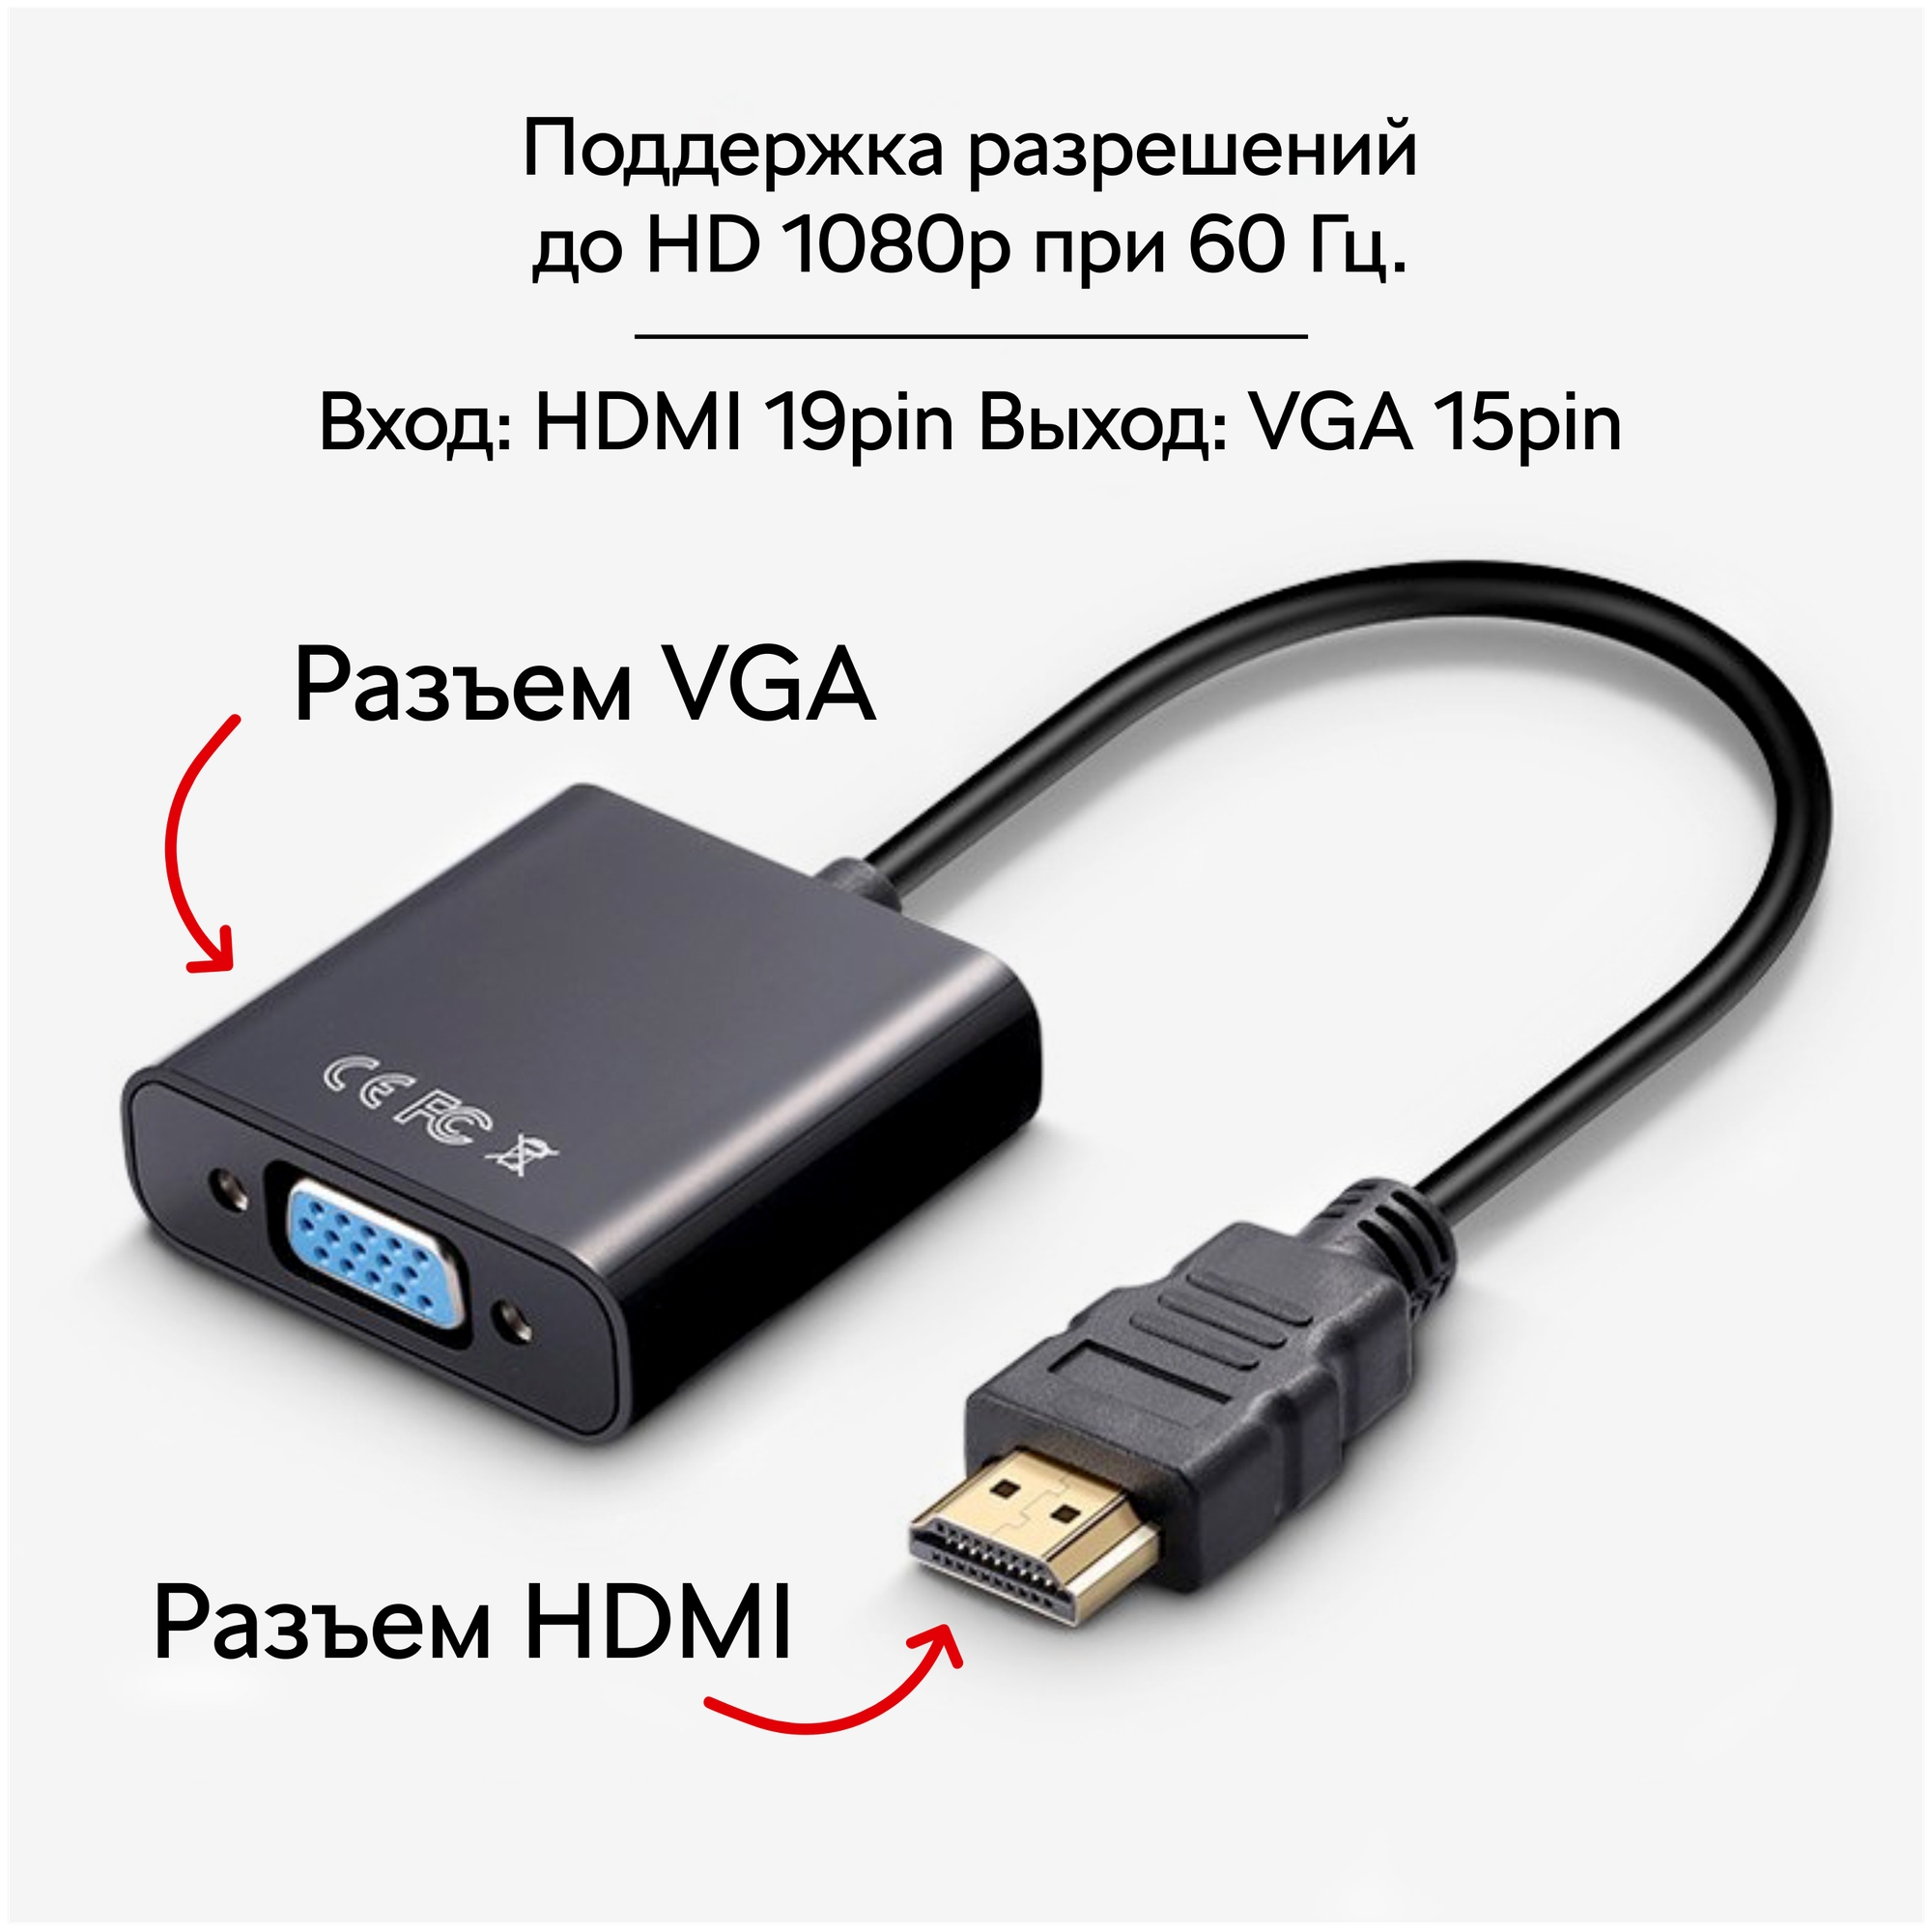 Переходник адаптер HDMI - VGA / кабель для видеокарты, монитора, проектора / конвертер